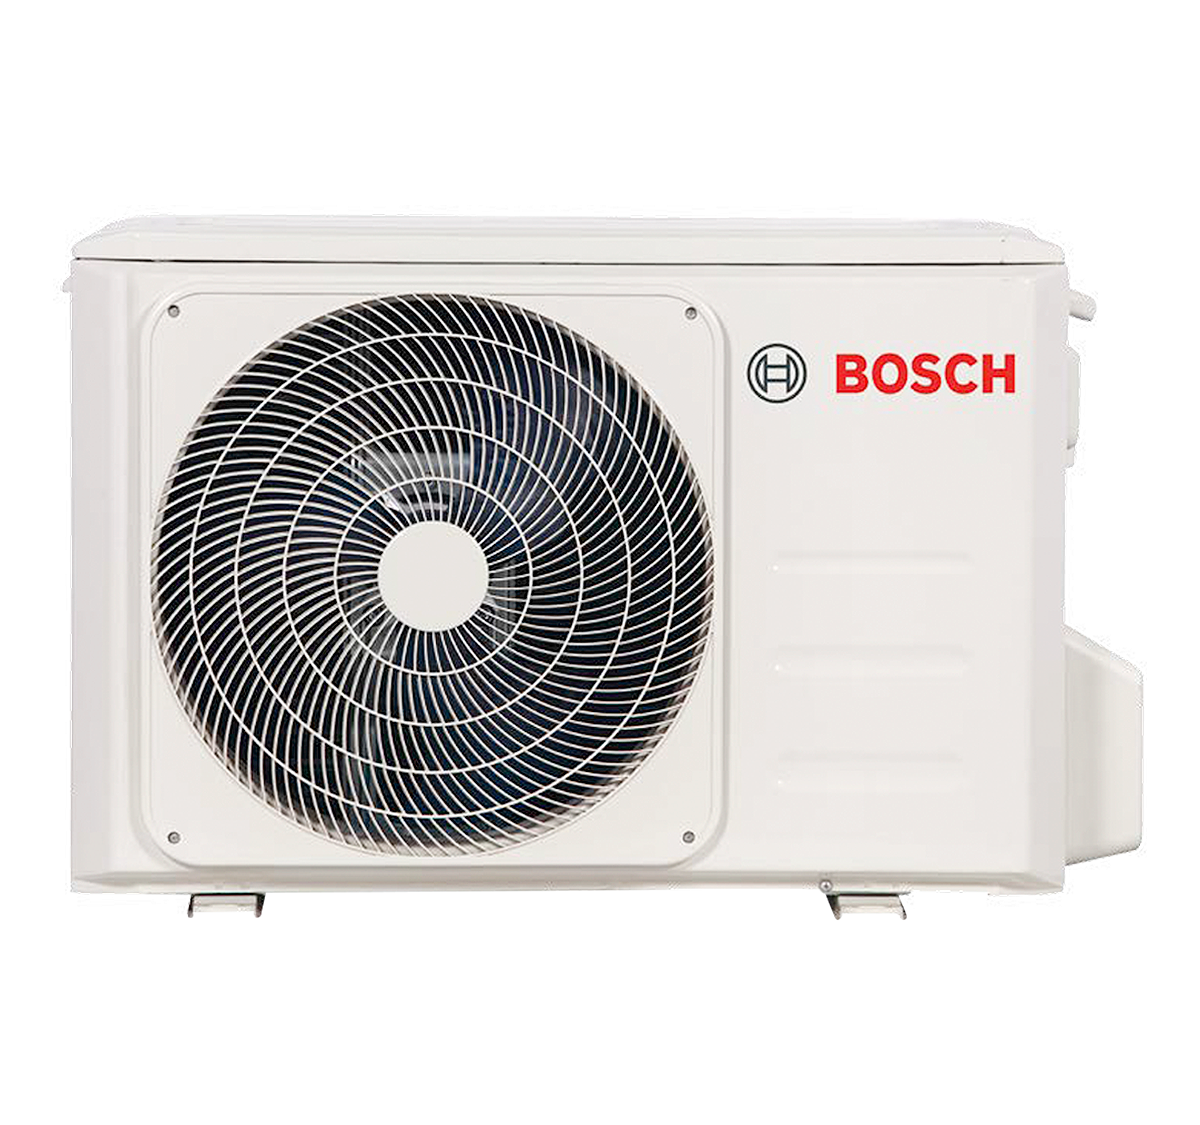 Condensadora 1x1 equipo exterior Bosch Inverter DC gama Climate 5000 Modelo 2,6 kW